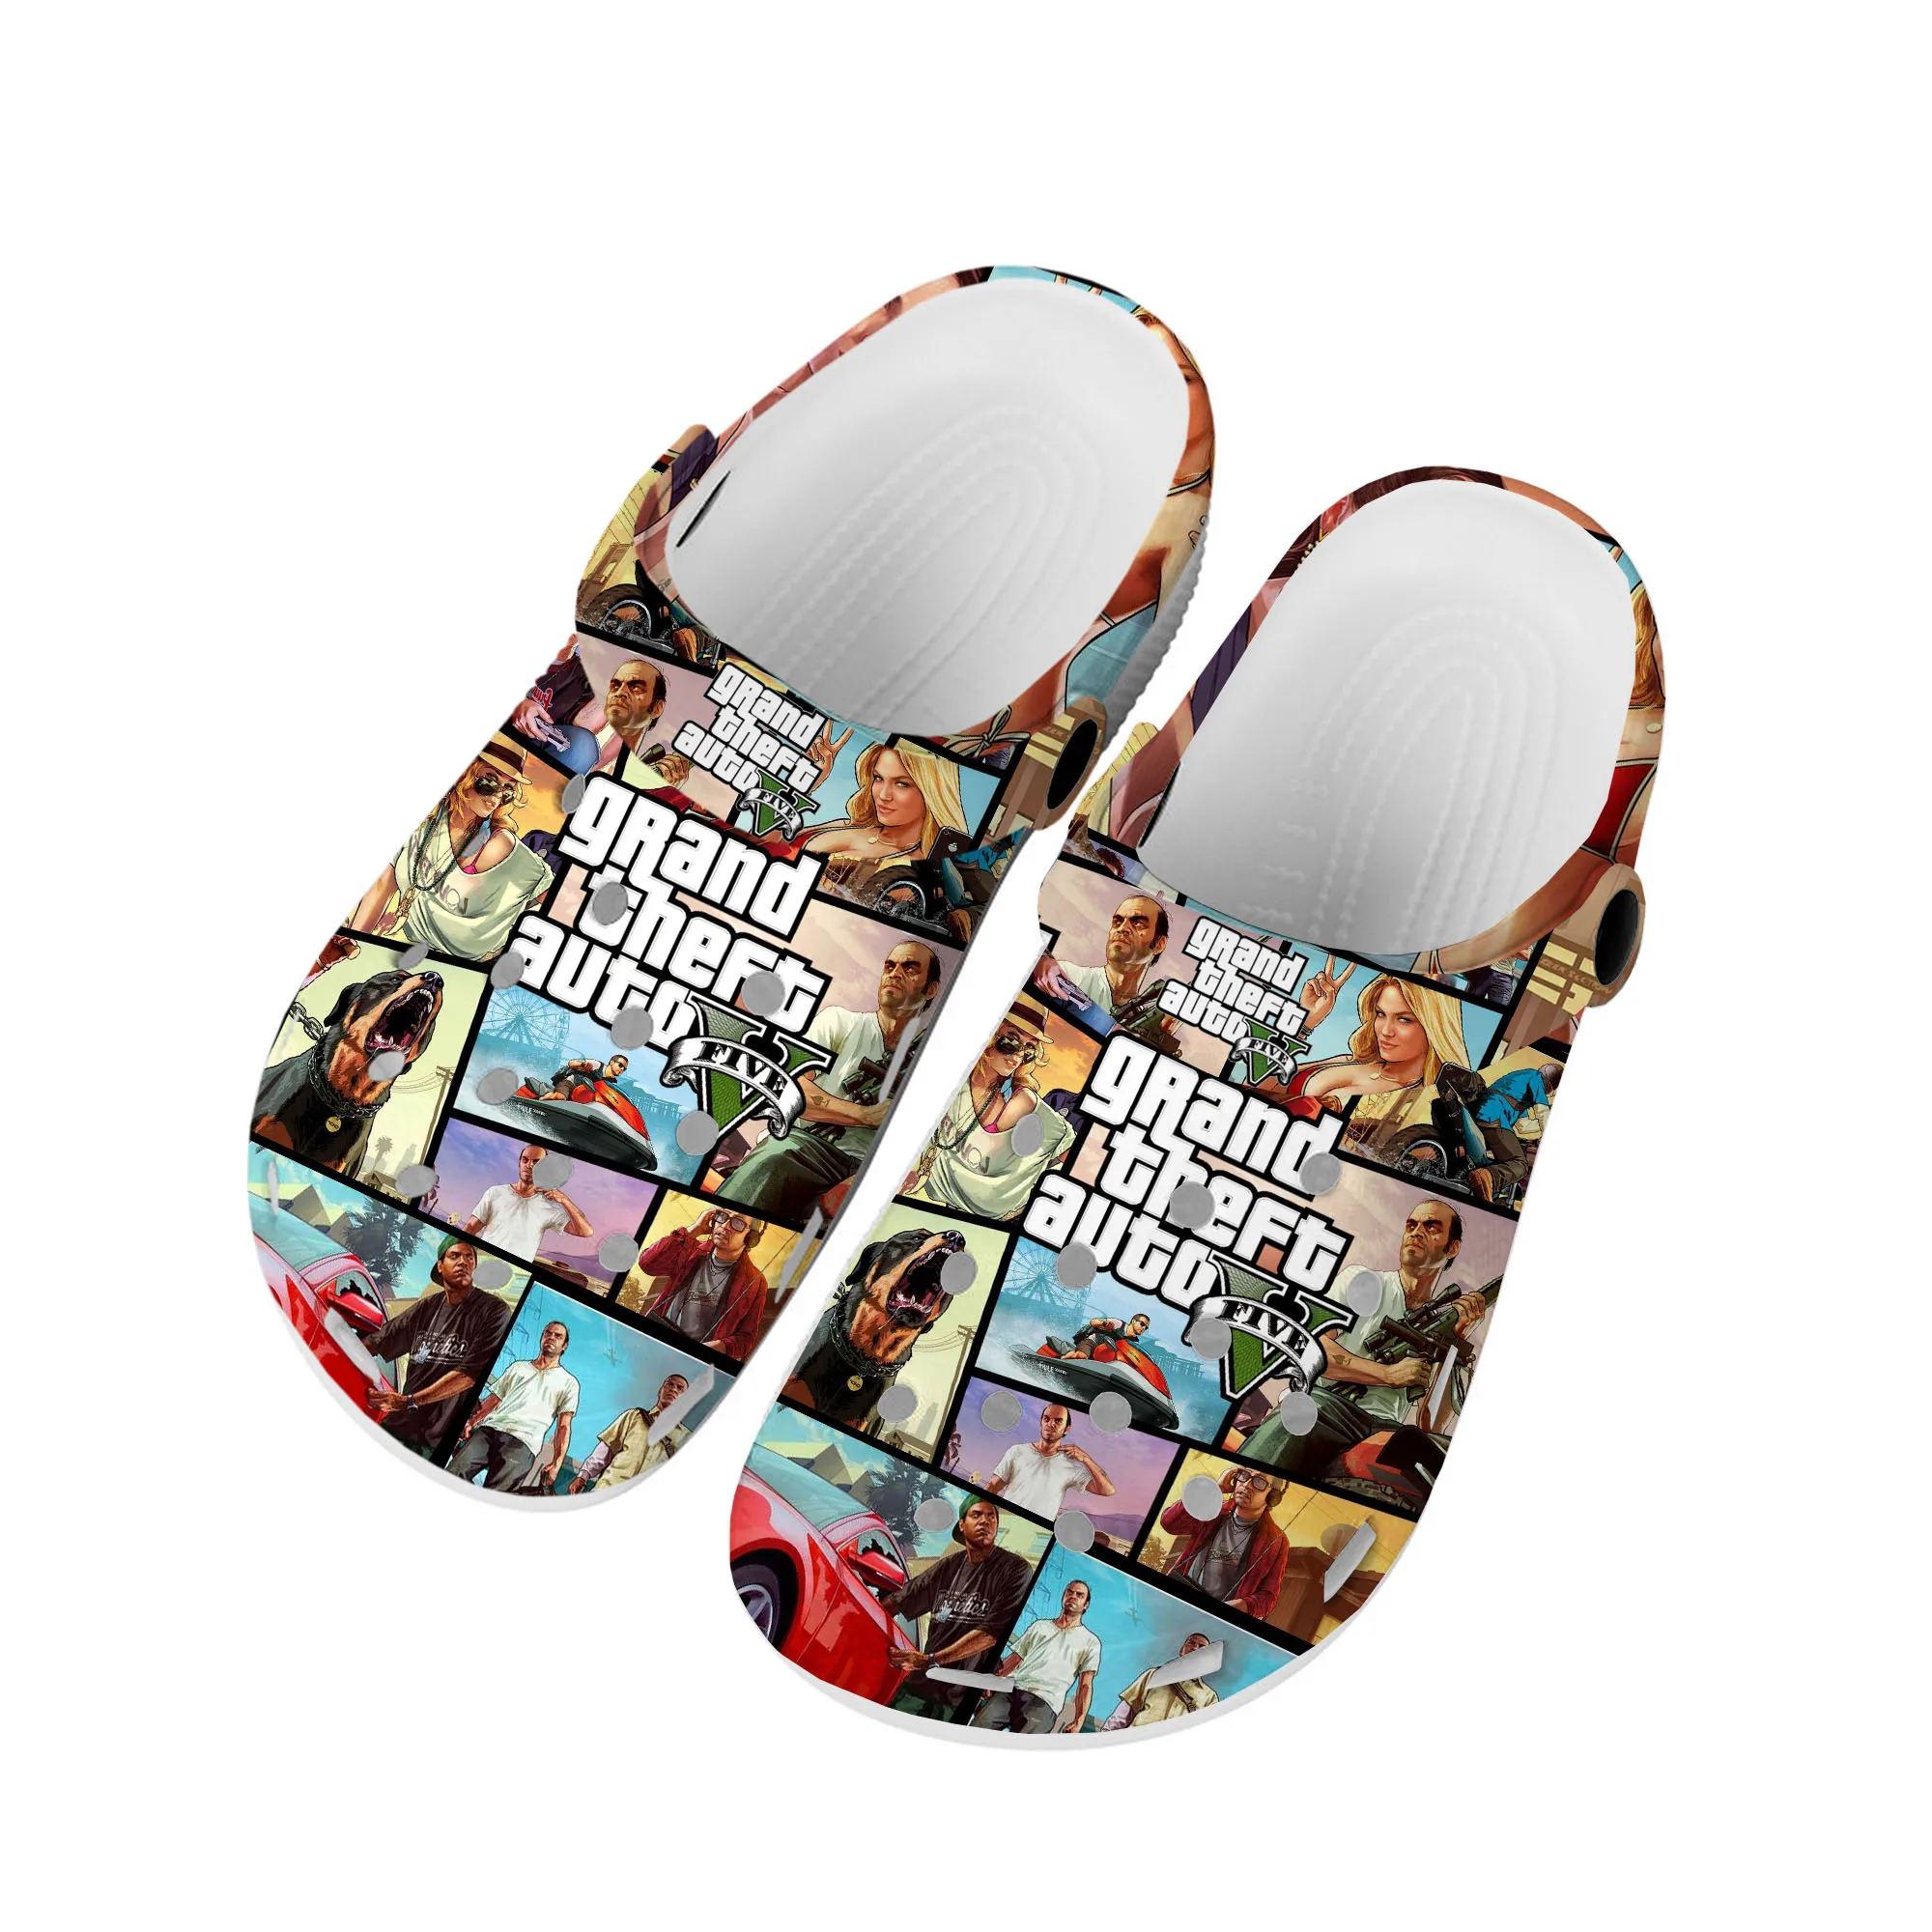 

Аниме мультфильм Grand Theft Auto GTA V 5 домашние Сабо под заказ обувь для воды Мужская Женская подростковая обувь садовые Туфли-сабо пляжные тапочки с отверстиями